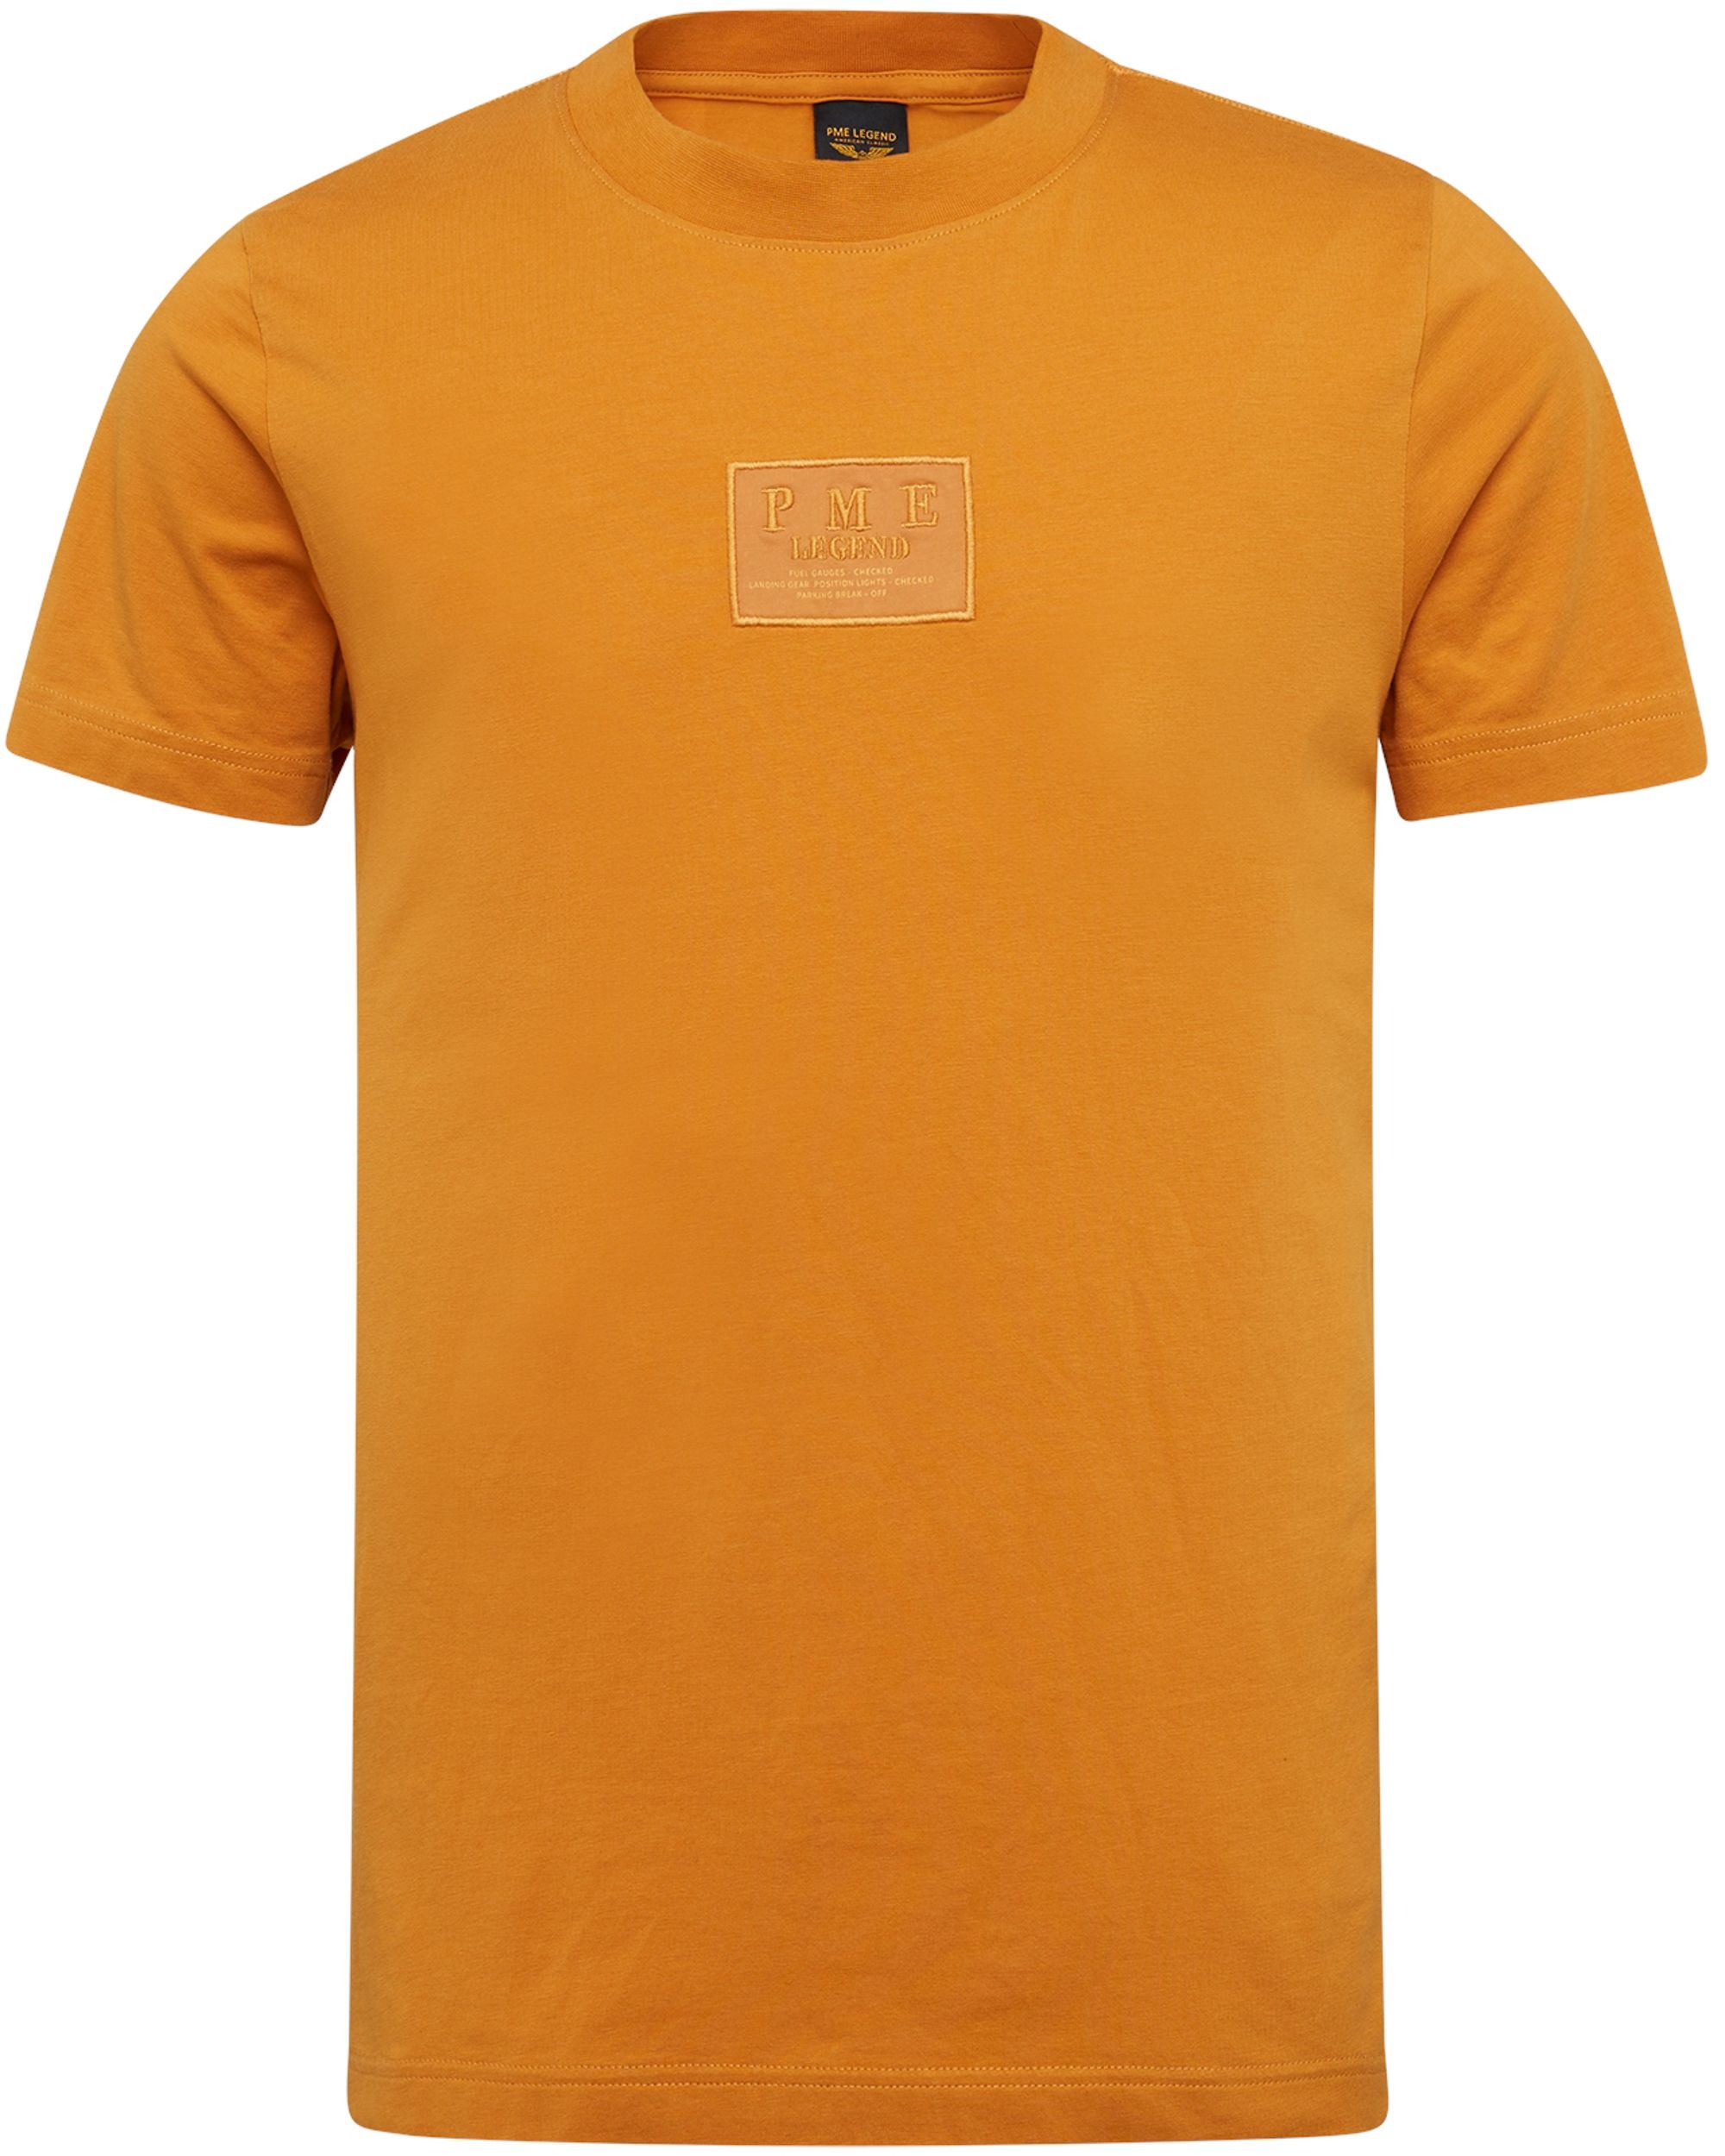 PME Legend T-shirt KM Oranje 082582-001-L